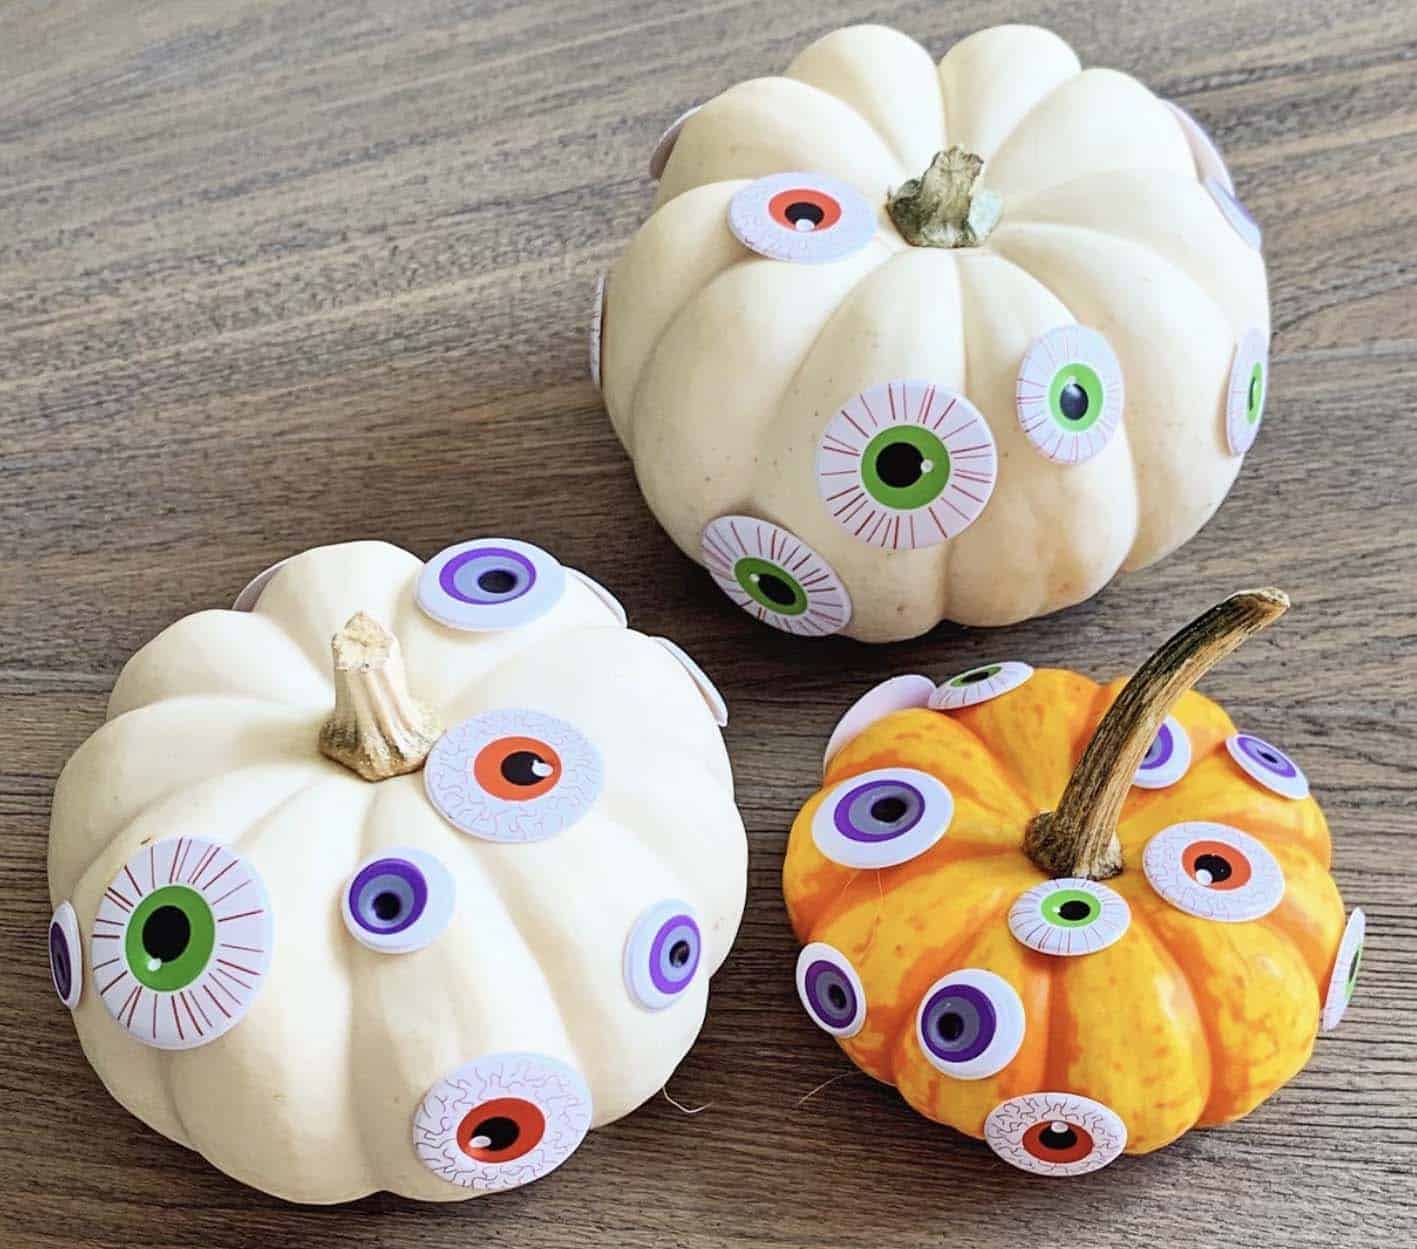 googly-eyed pumpkins